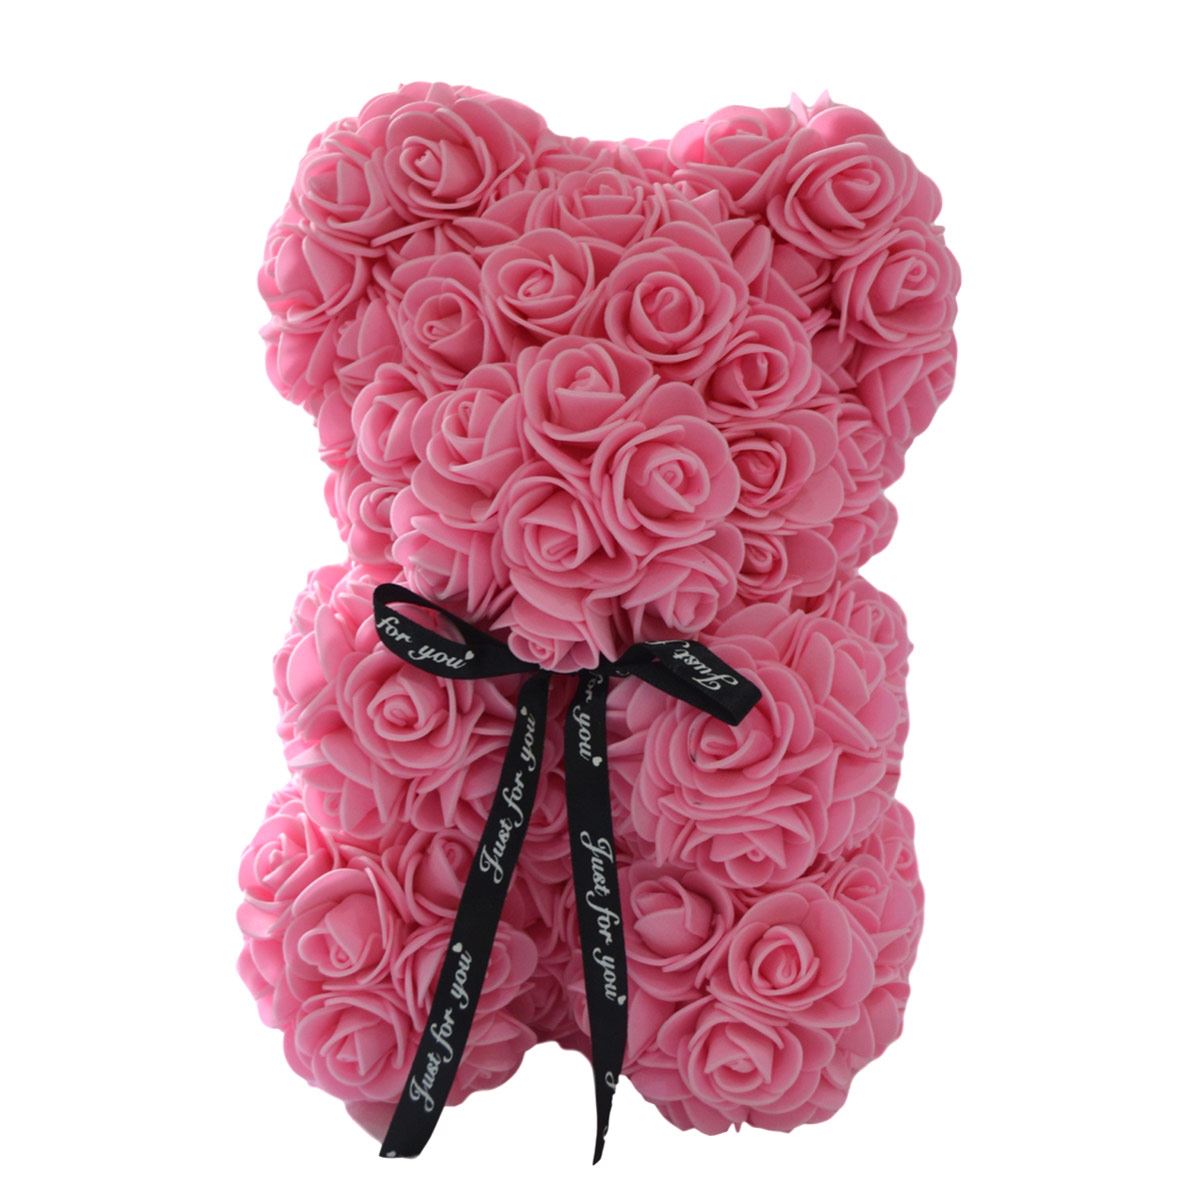 Rosa eterna, oso de fomie, oso de rosas artificiales, rosas preservadas a  domicilio en Bogotá, regalos lujosos con flores, la mejor floristeria de  colombia, domicilio de flores en colombia, ramos florales para